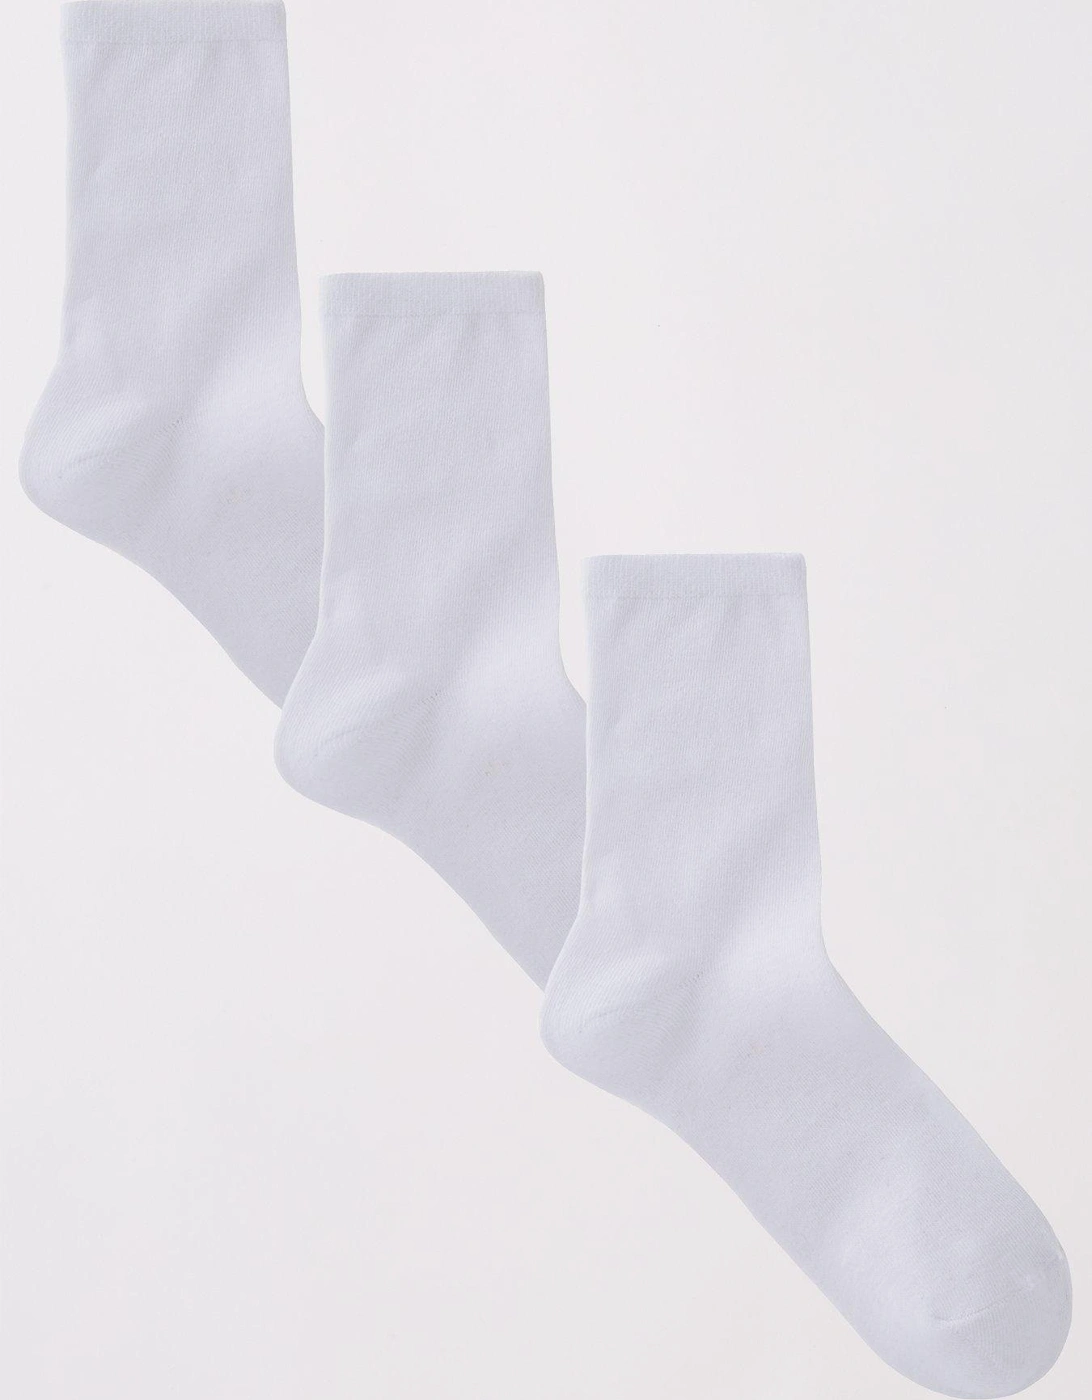 3 Pack Ankle Socks - White, 2 of 1